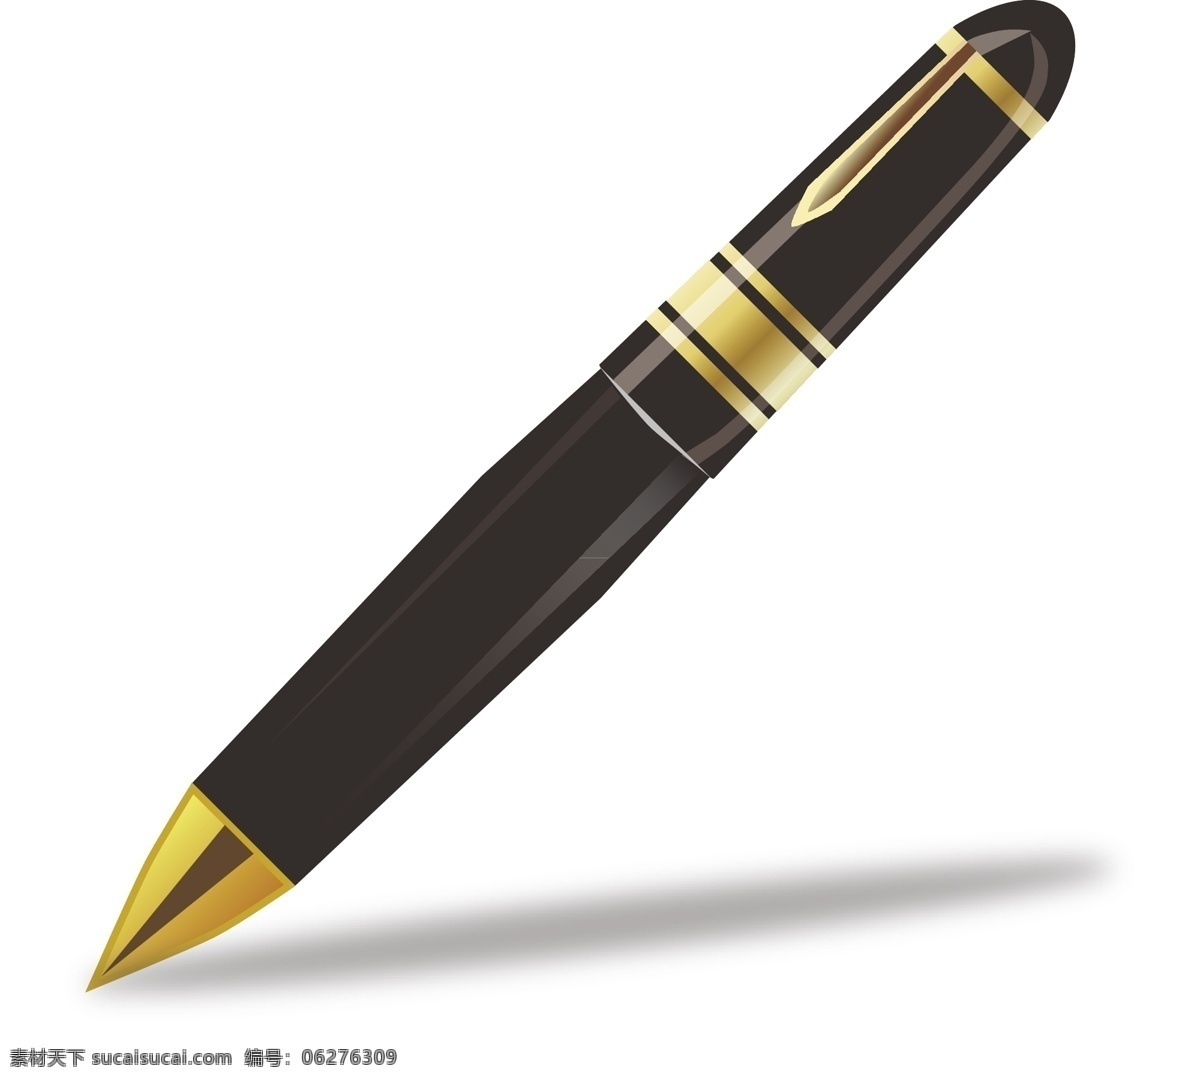 钢笔 细致 原创 初学 学习用品 生活百科 矢量